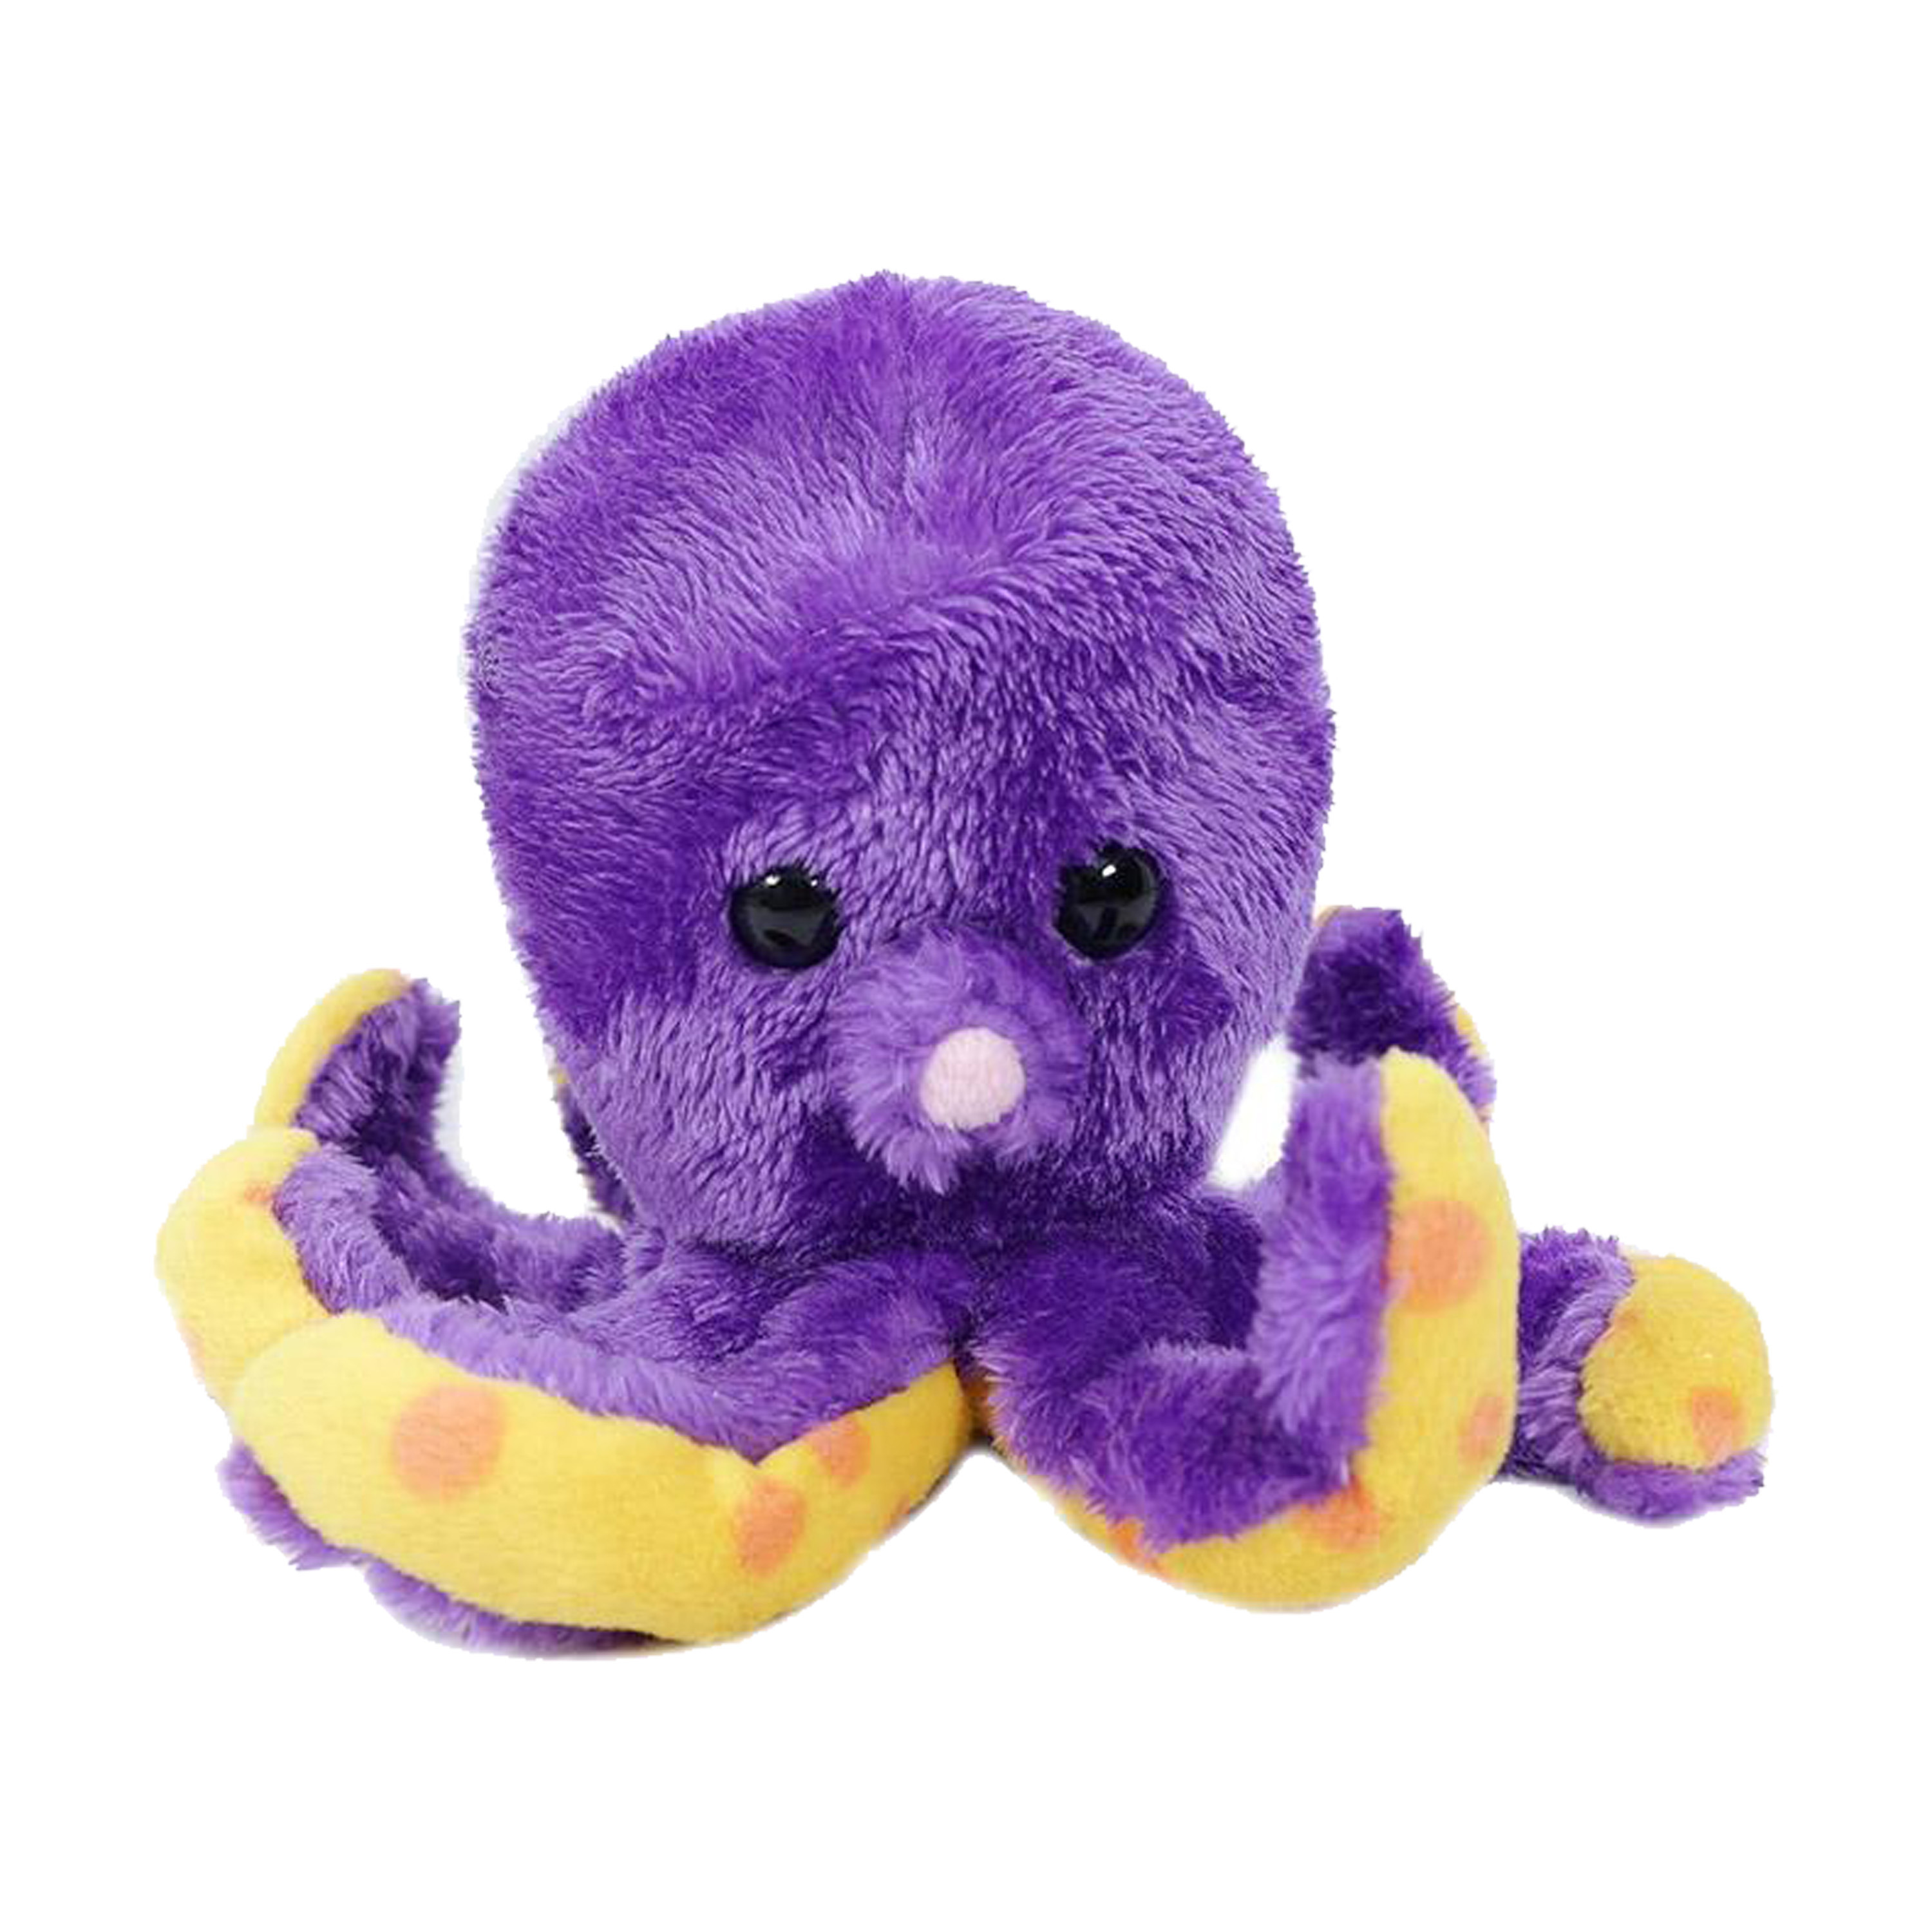 Knuffeldier Inktvis/octopus - zachte pluche stof - premium kwaliteit knuffels - paars - 12 cm -